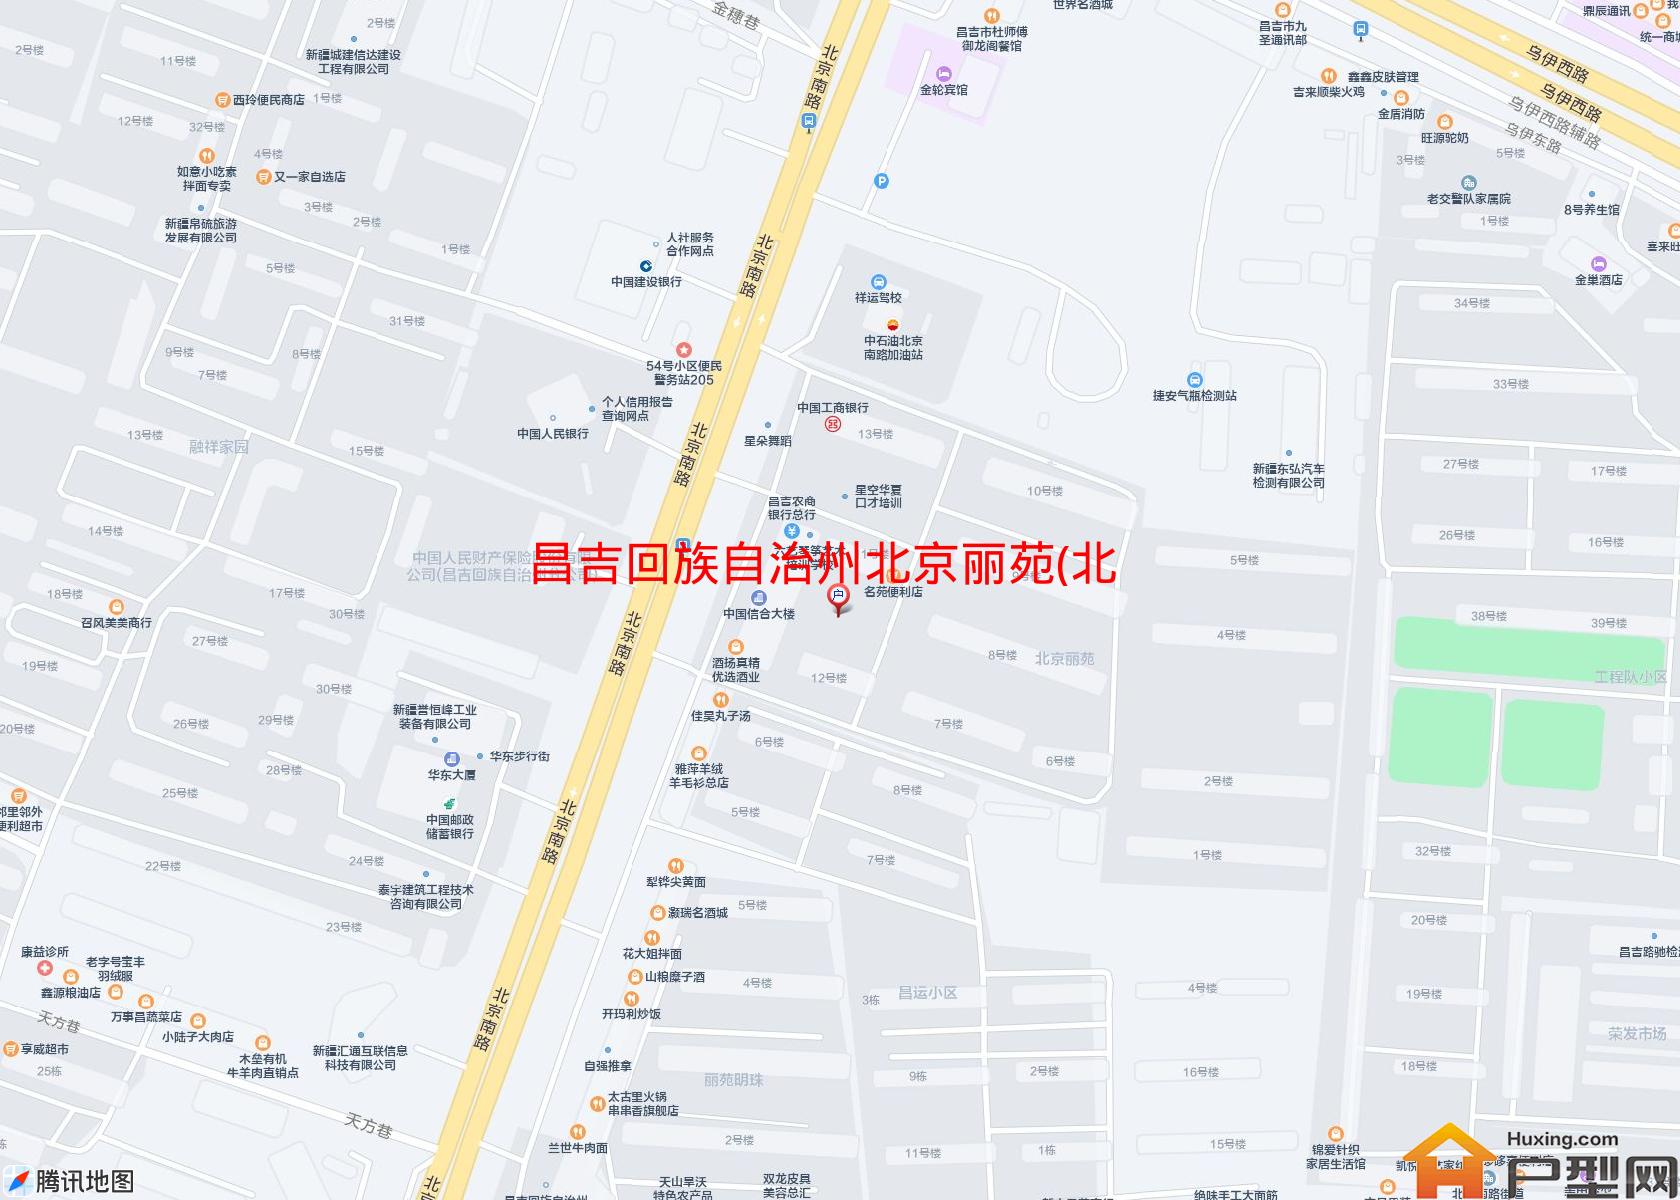 北京丽苑(北京南路)小区 - 户型网